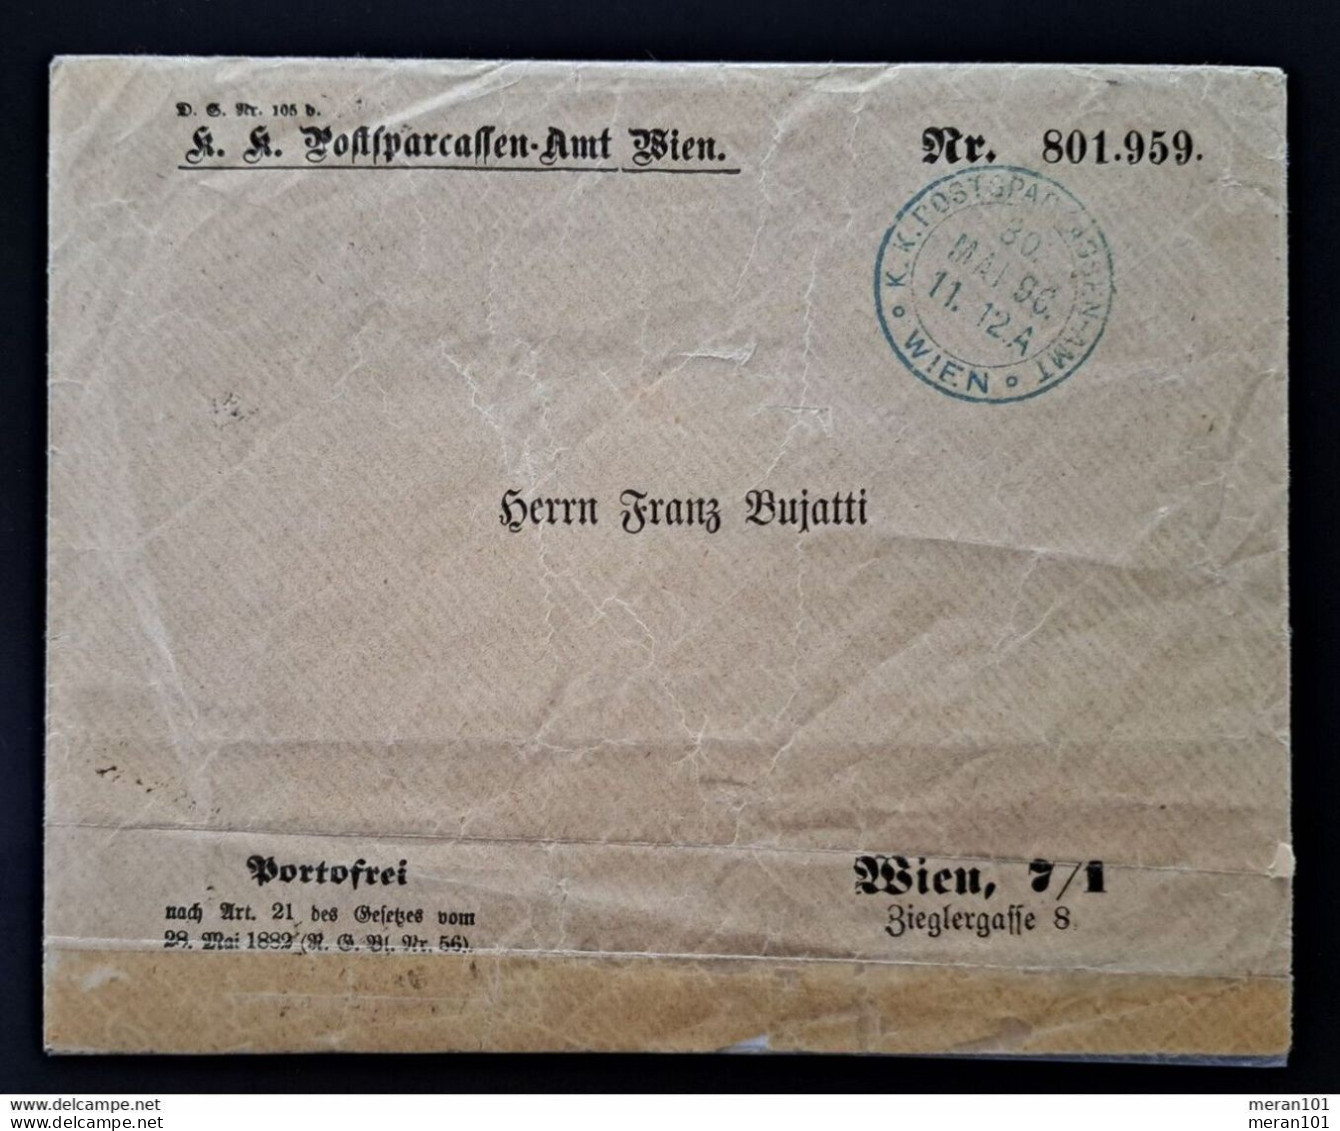 Österreich 1896, Umschlag Portofrei POSTSPARKASSEN-AMT WIEN 30. MAI 96 - Lettres & Documents